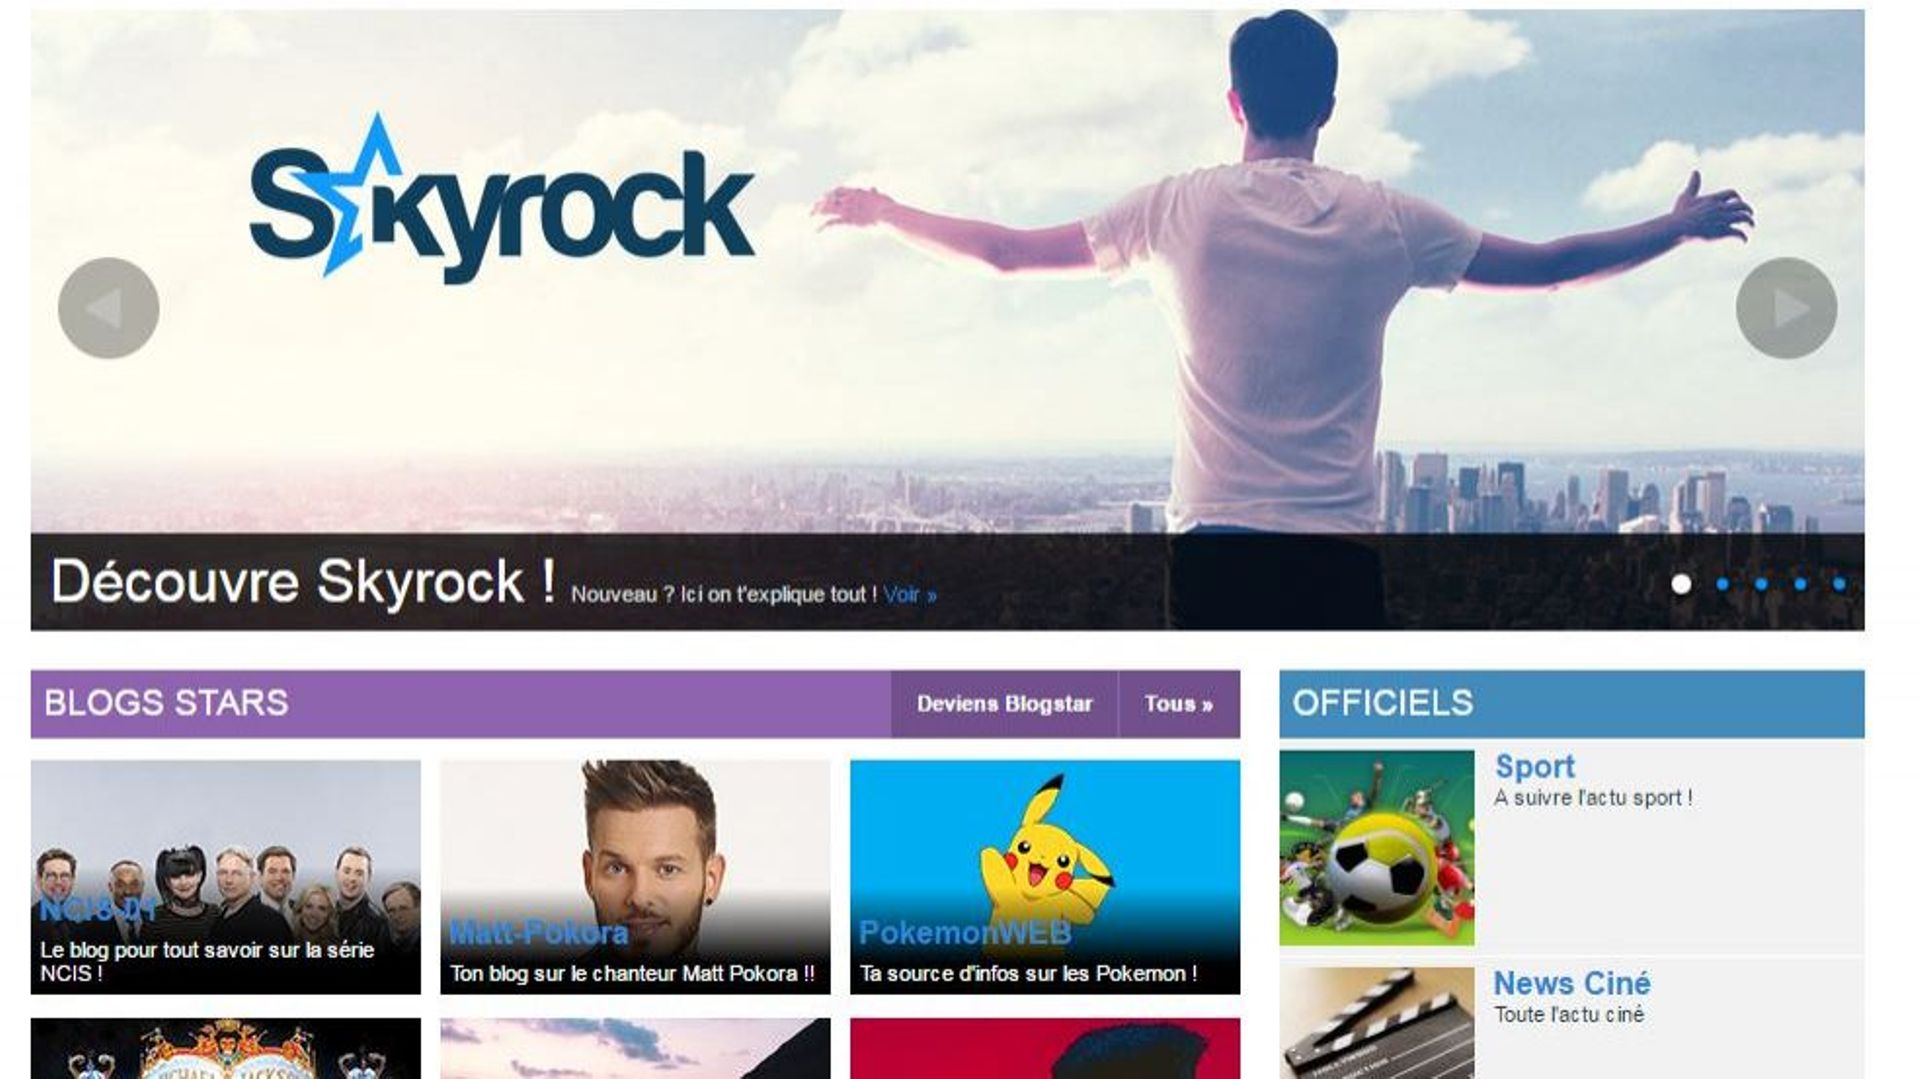 La page d'accueil de Skyrock.com, qui héberge la plate-forme Skyblog.